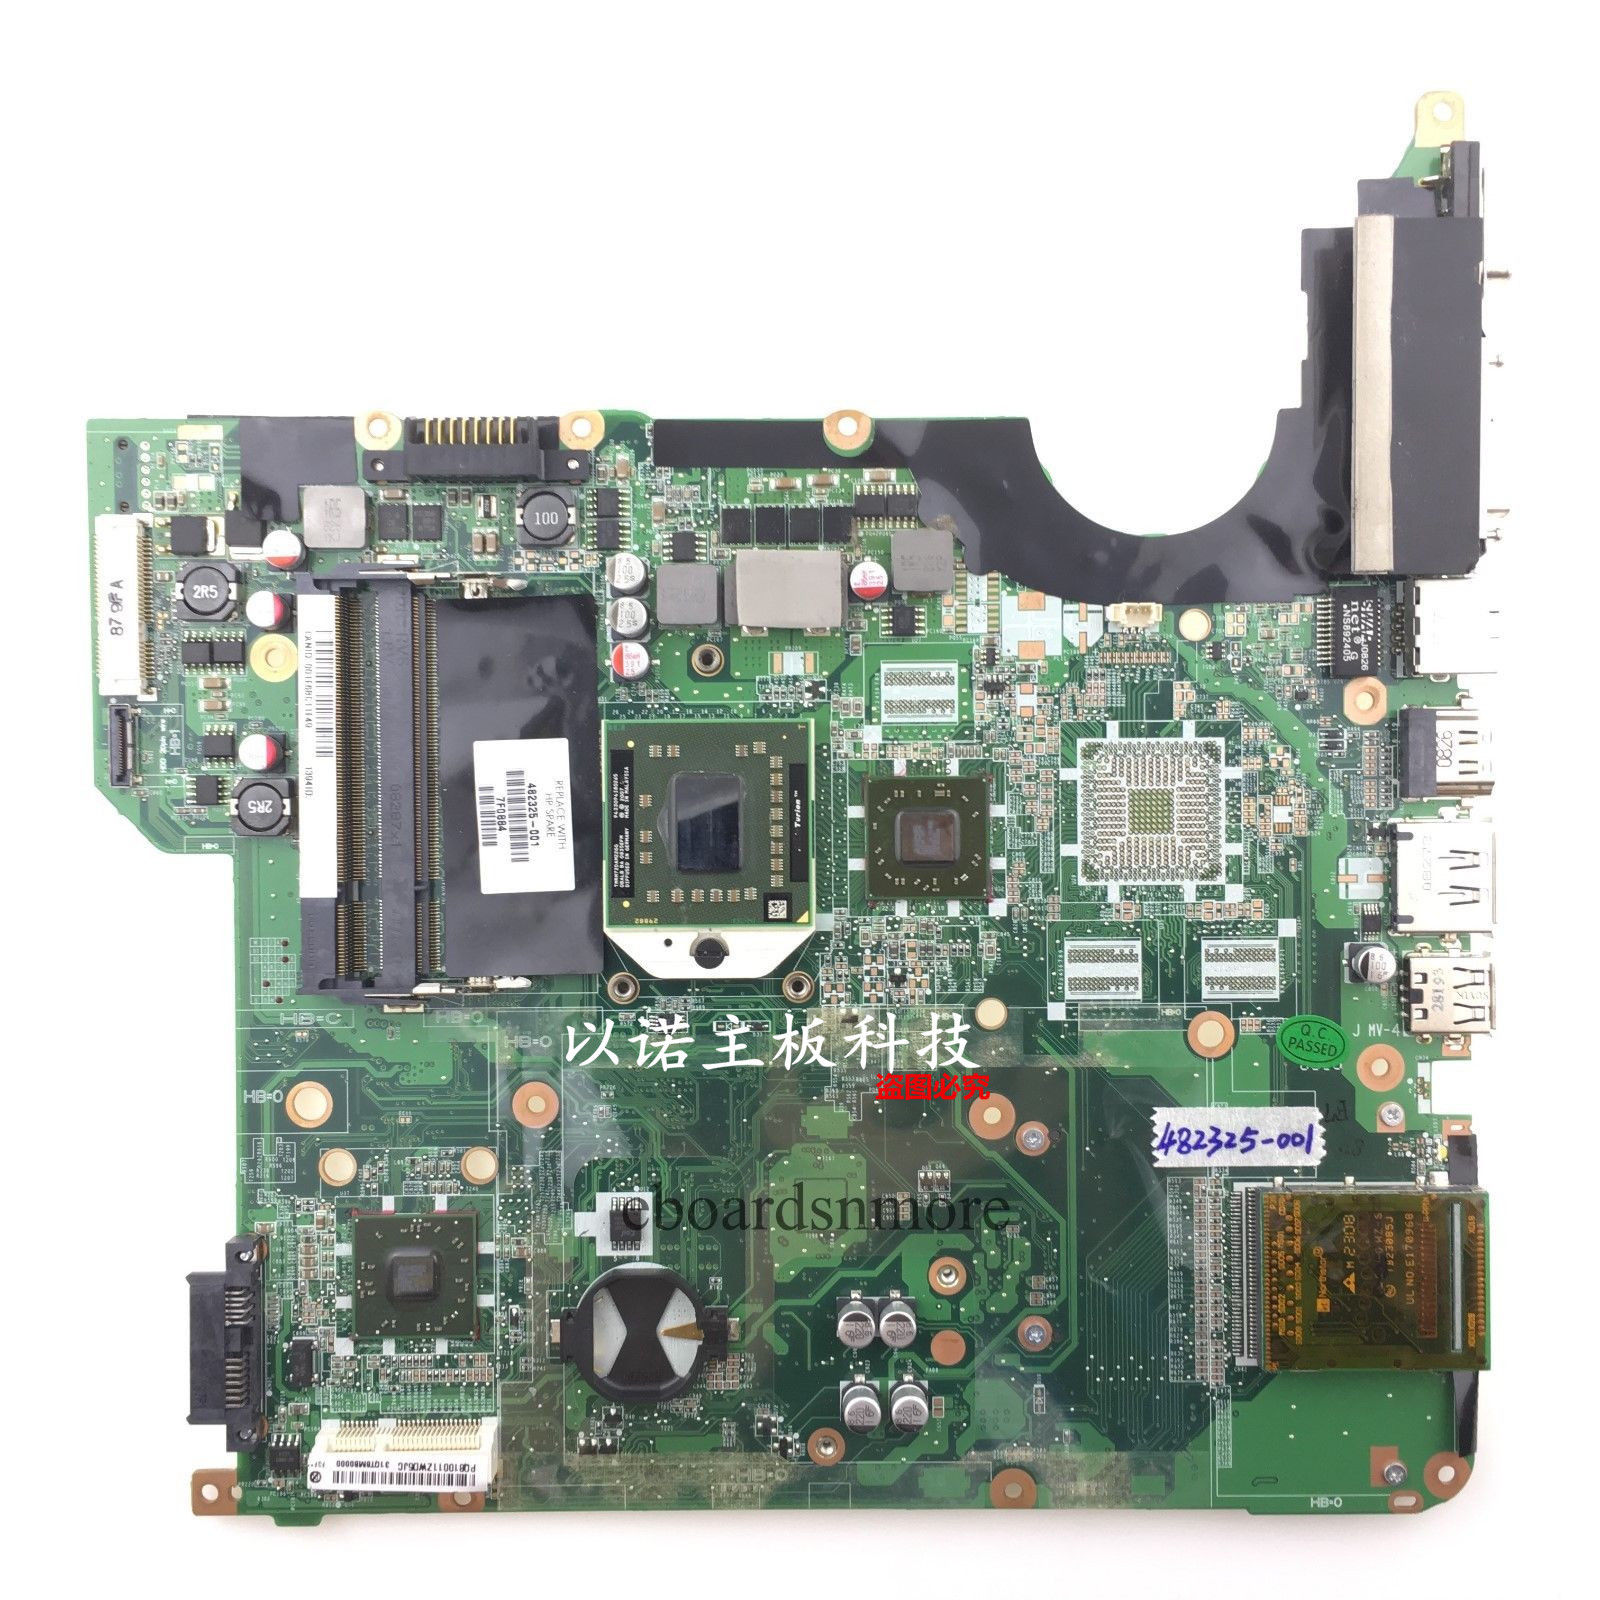 482325-001 AMD motherboard +CPU for HP DV5 DV5-1000 Series Laptops DA0QT8MB6F0 A Compatible CPU Brand: AMD